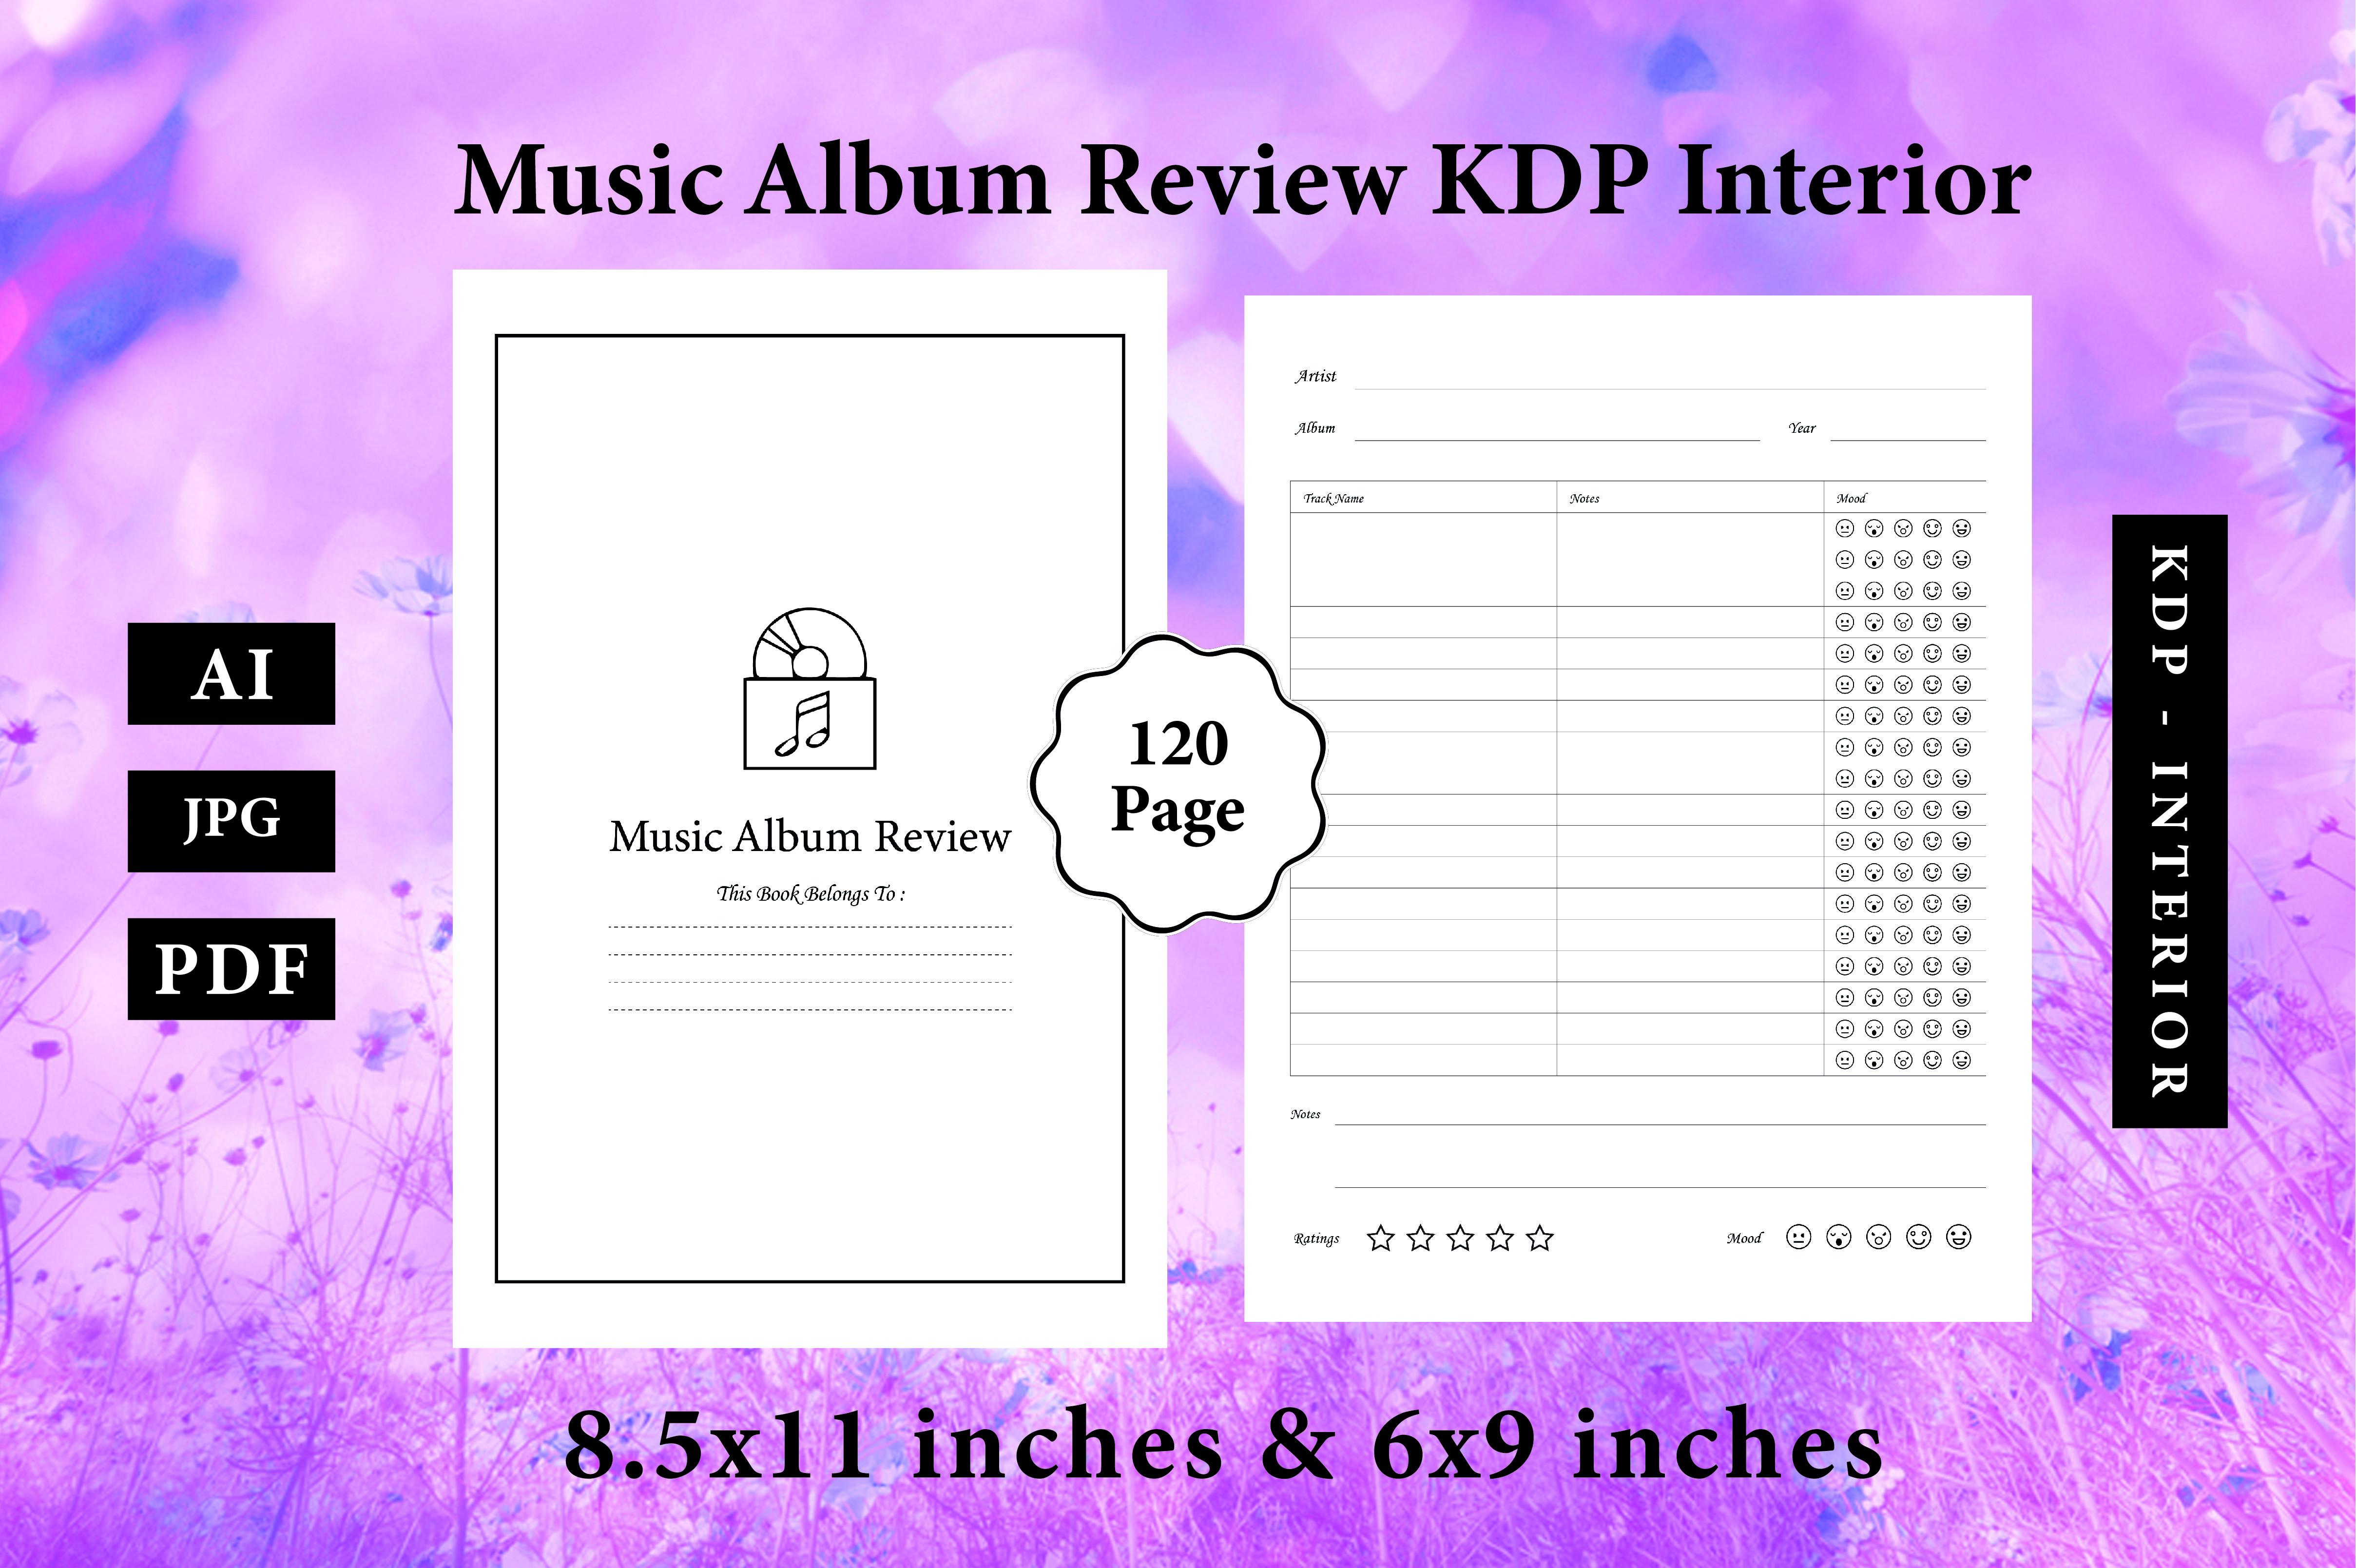 Music Album Review for KDP Interior